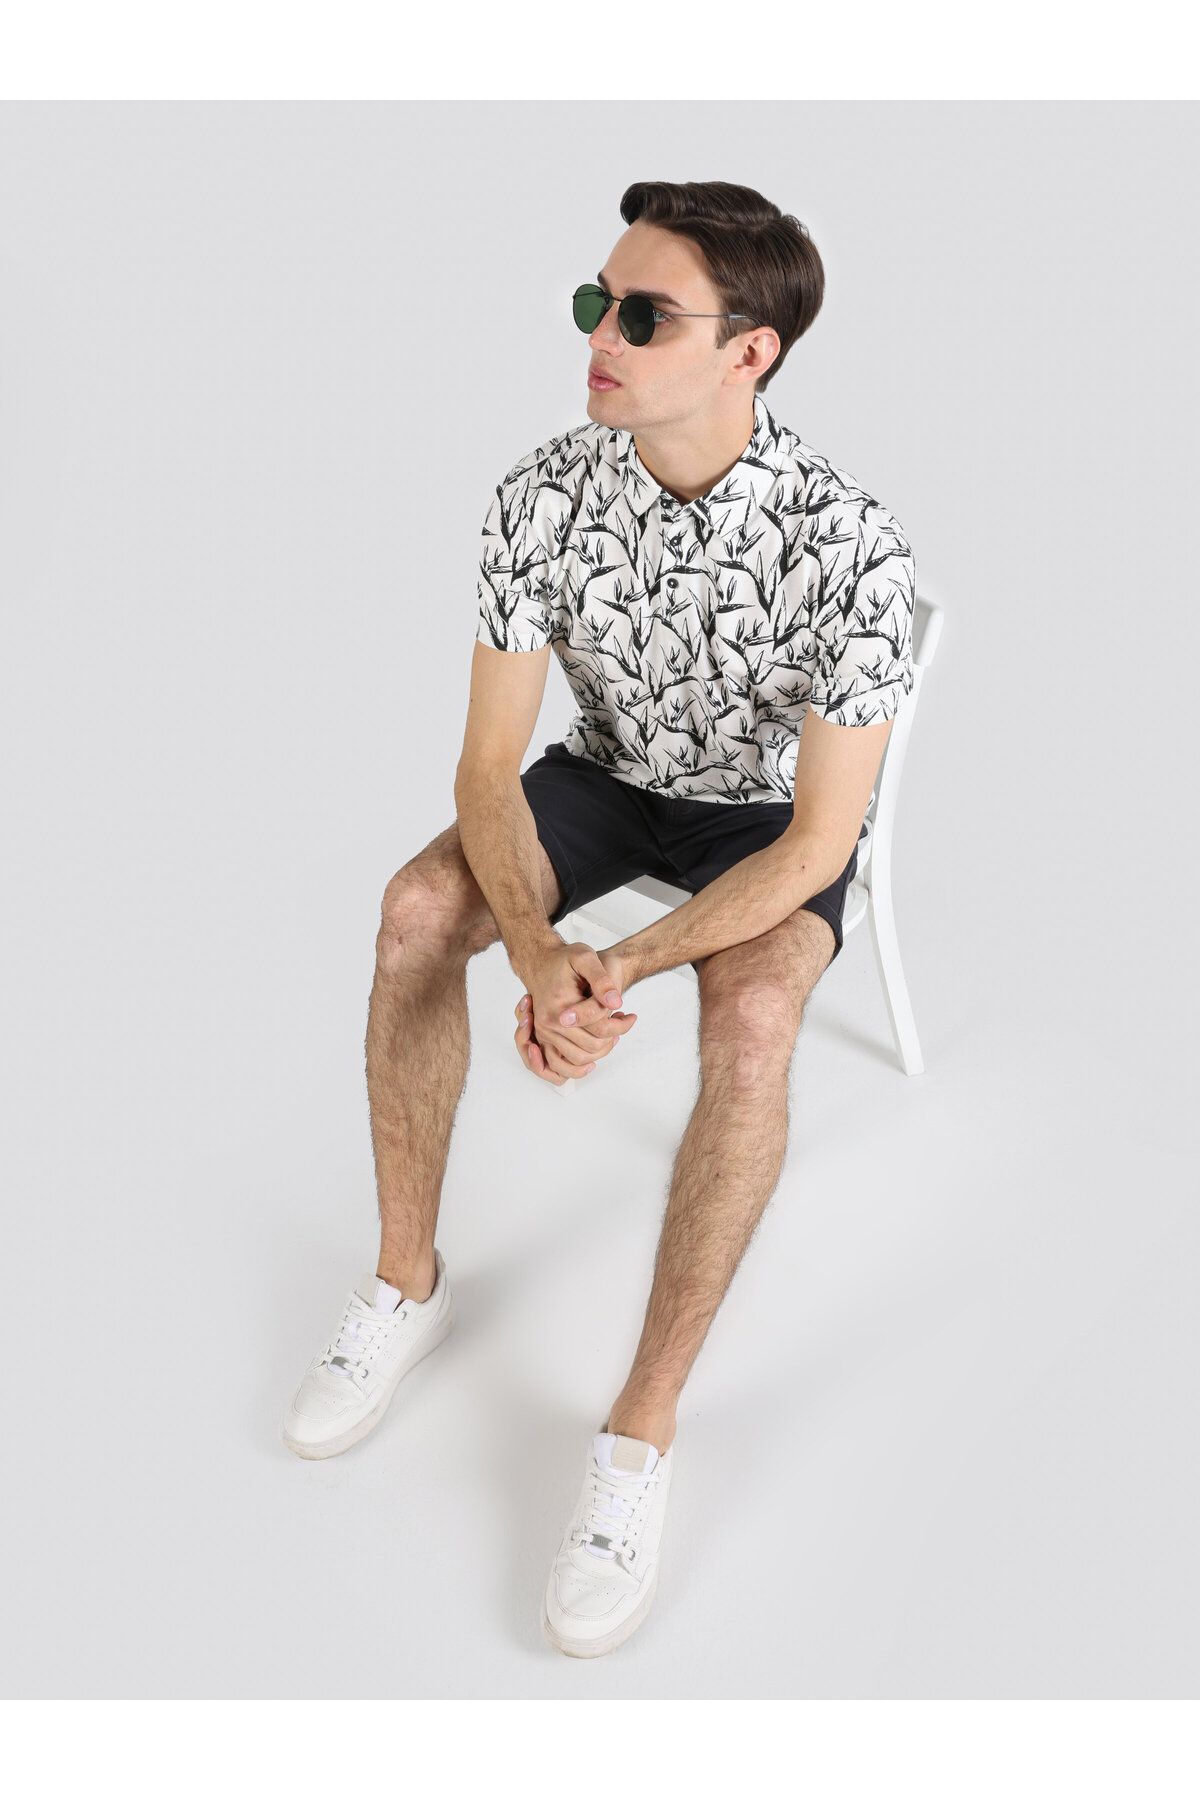 Colin’s تی شرت آستین کوتاه یقه دار مردانه سفید با چاپ معمولی